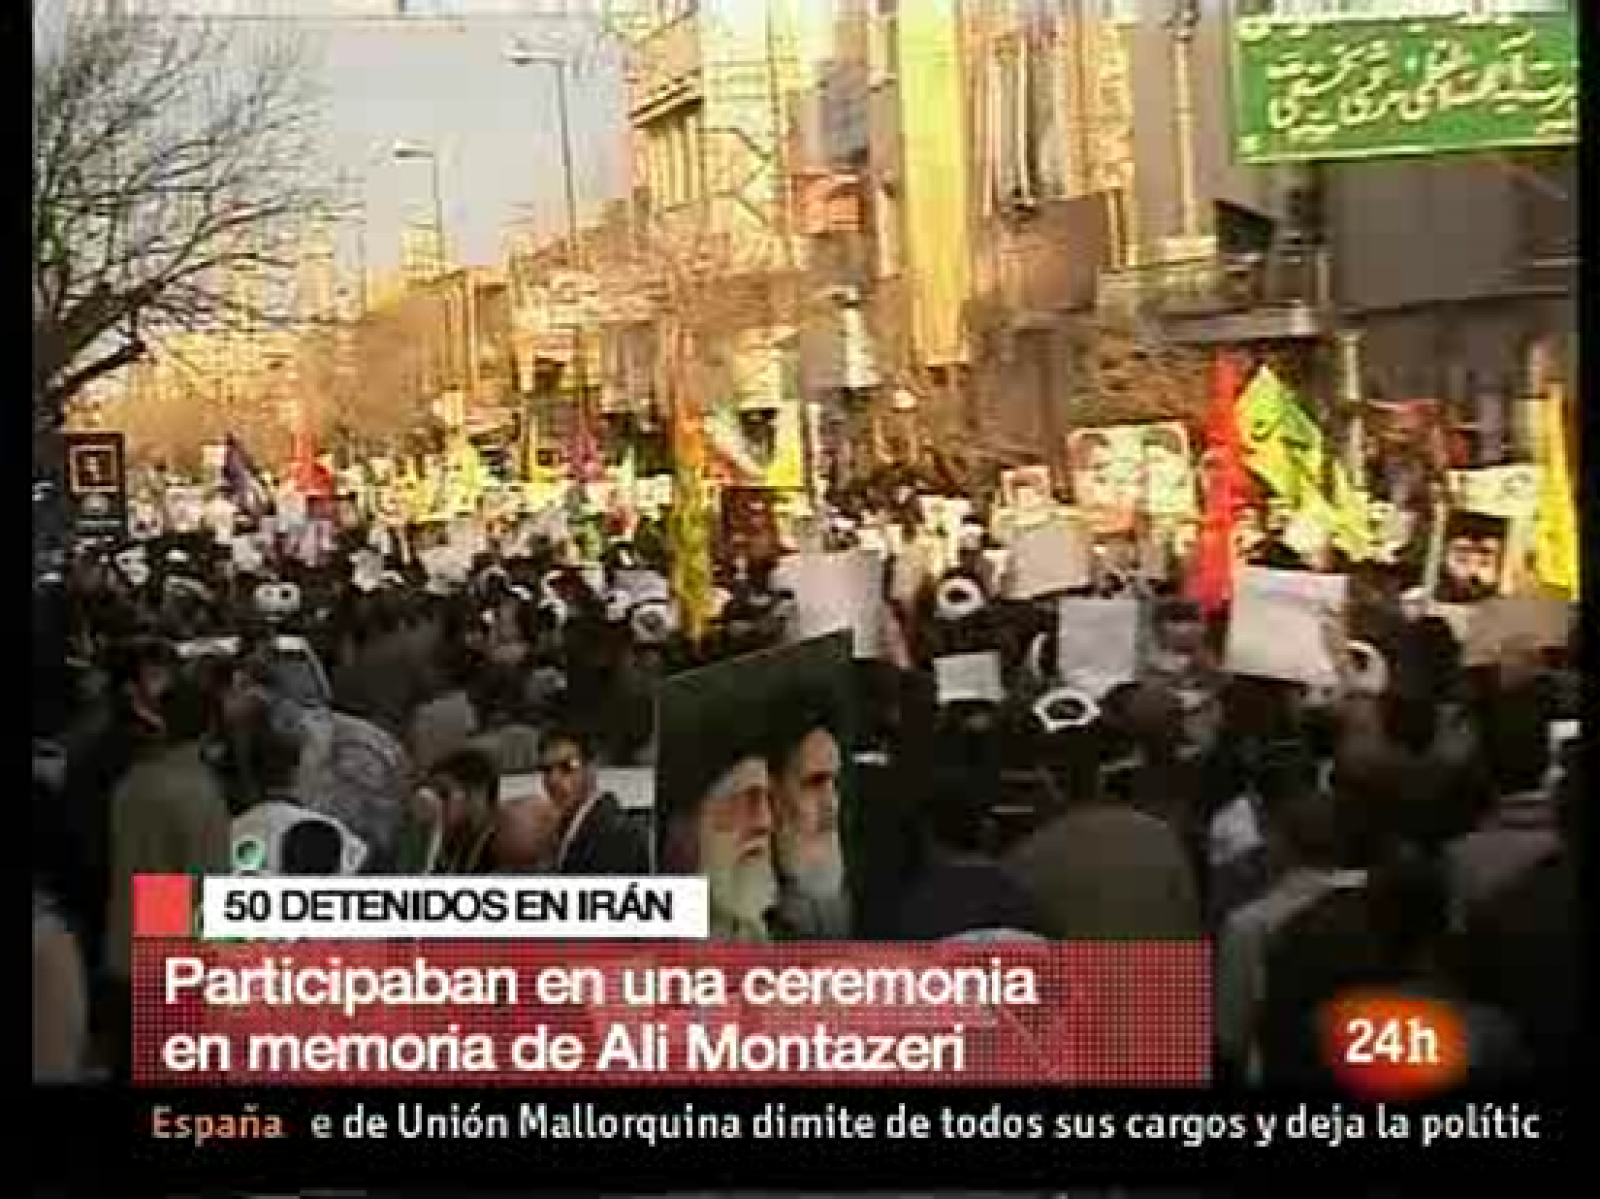 Cincuenta personas han sido arrestadas en Isfahan en el centro de Irán, durante los enfrentamientos entre la policía y los opositores que querían asistir a una ceremonia en memoria del gran ayatolá Hossein Ali Montazeri en Qom que murió el sábado, según anunciaron en el sitio web de la oposción.